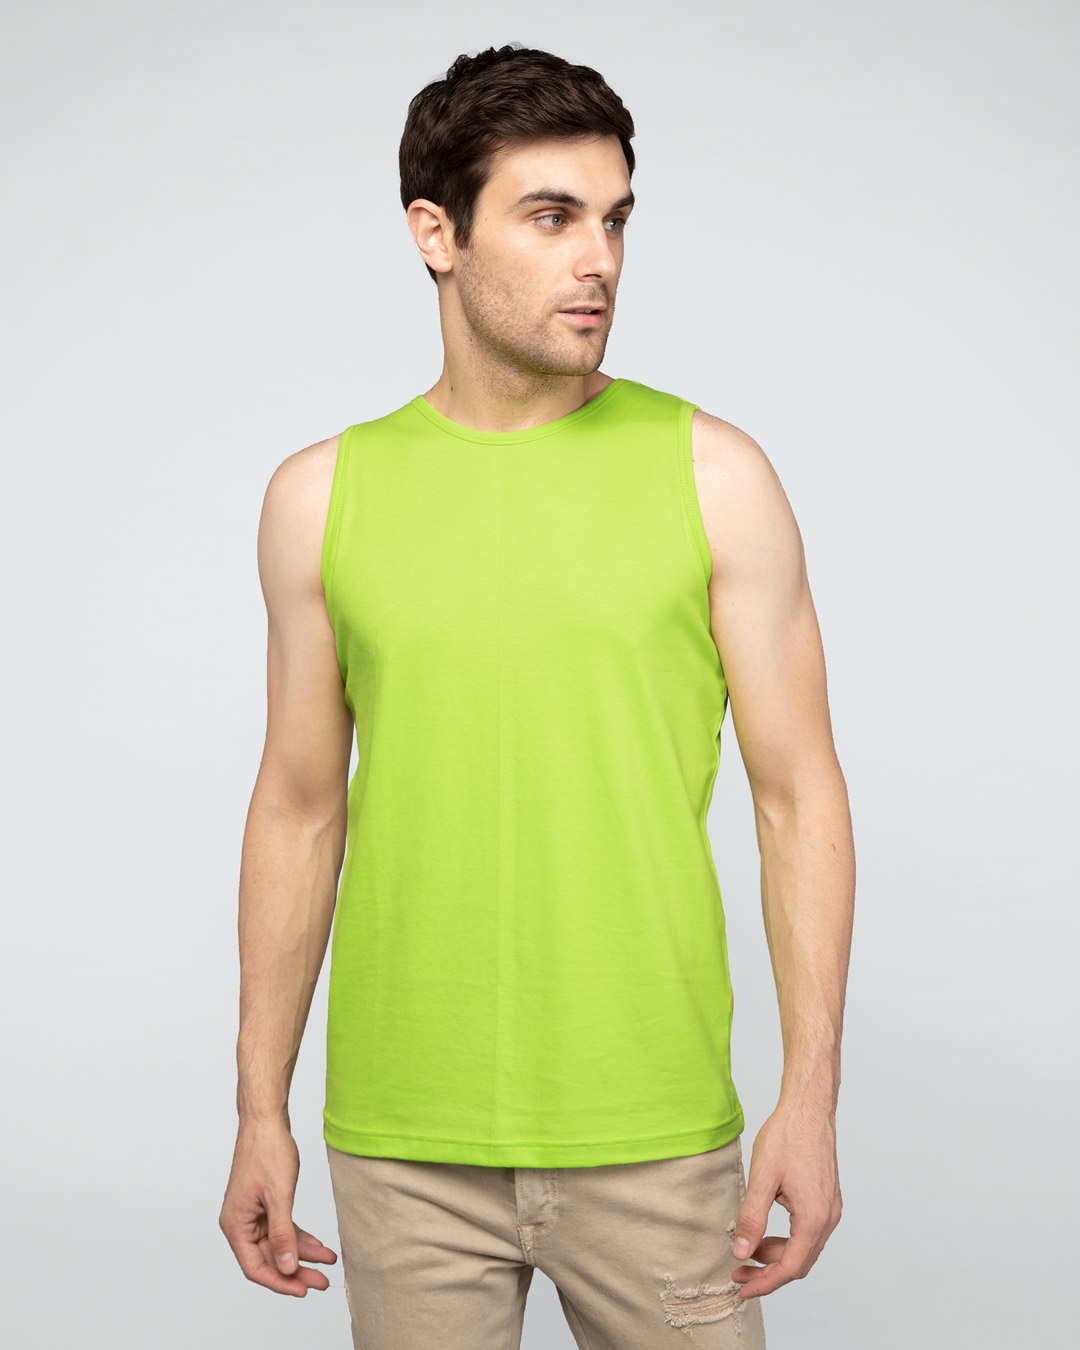 Buy Neon Green Vest for Men green Online at Bewakoof